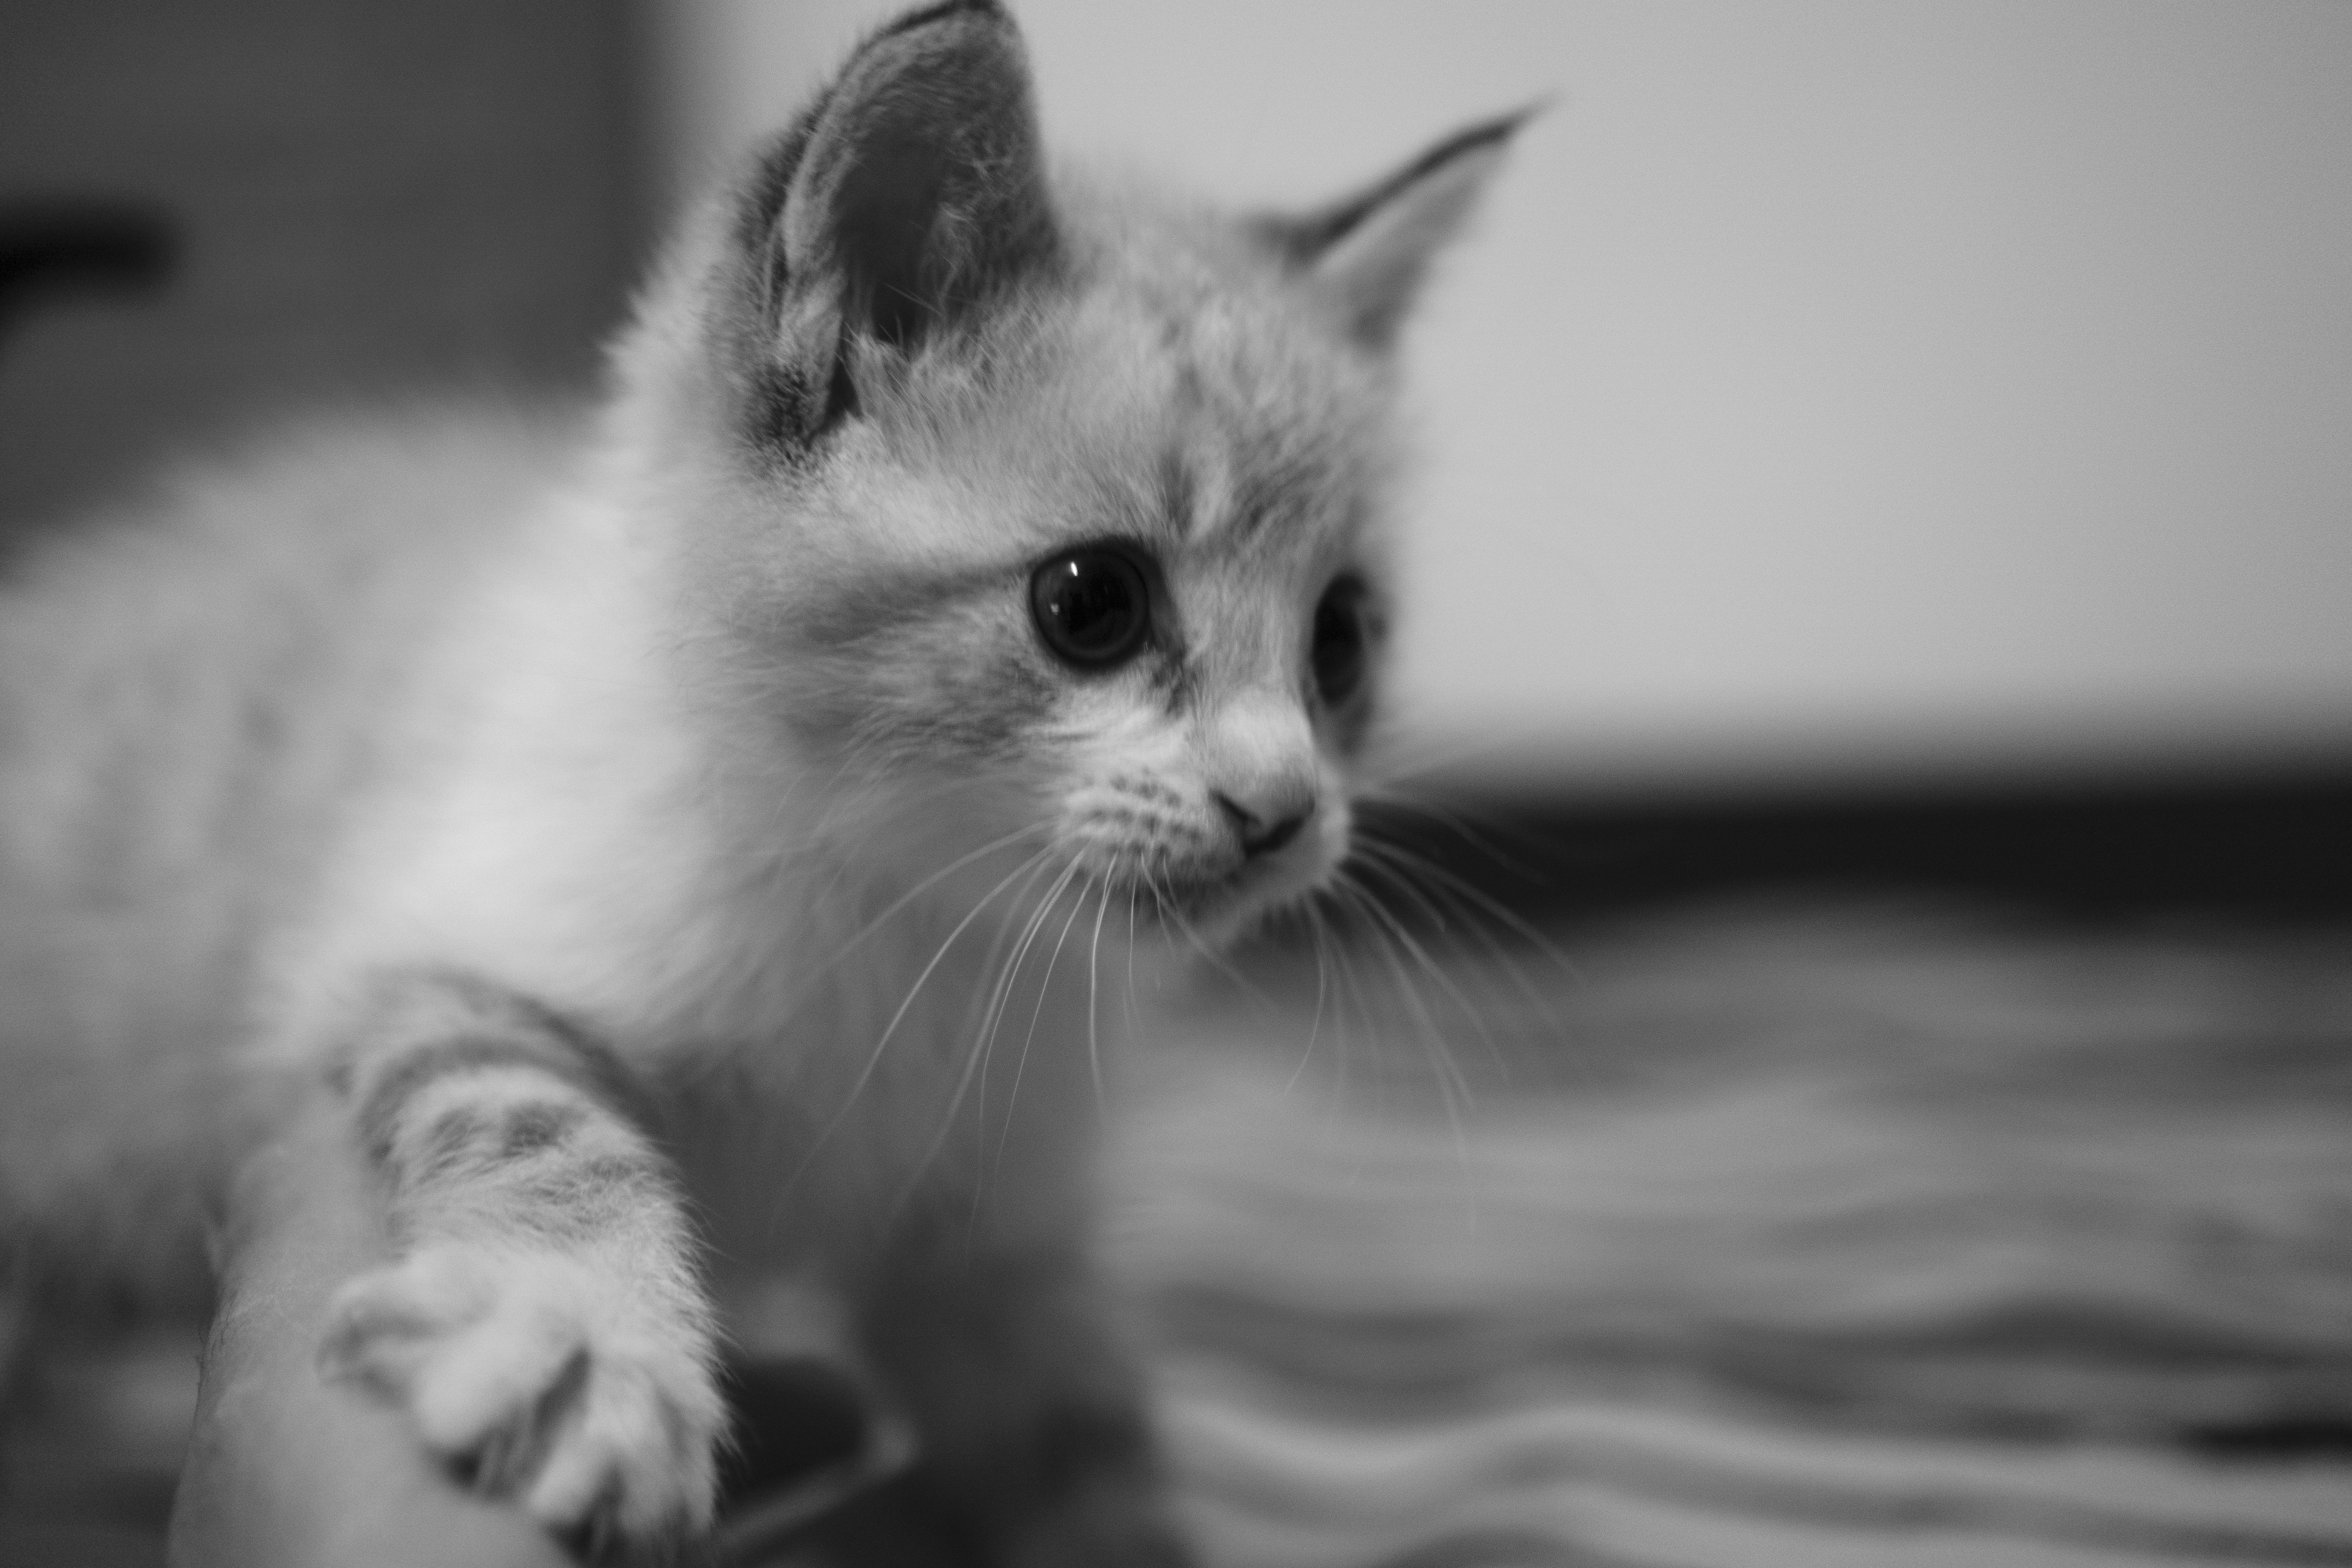 grayscale photo of kitten on floor